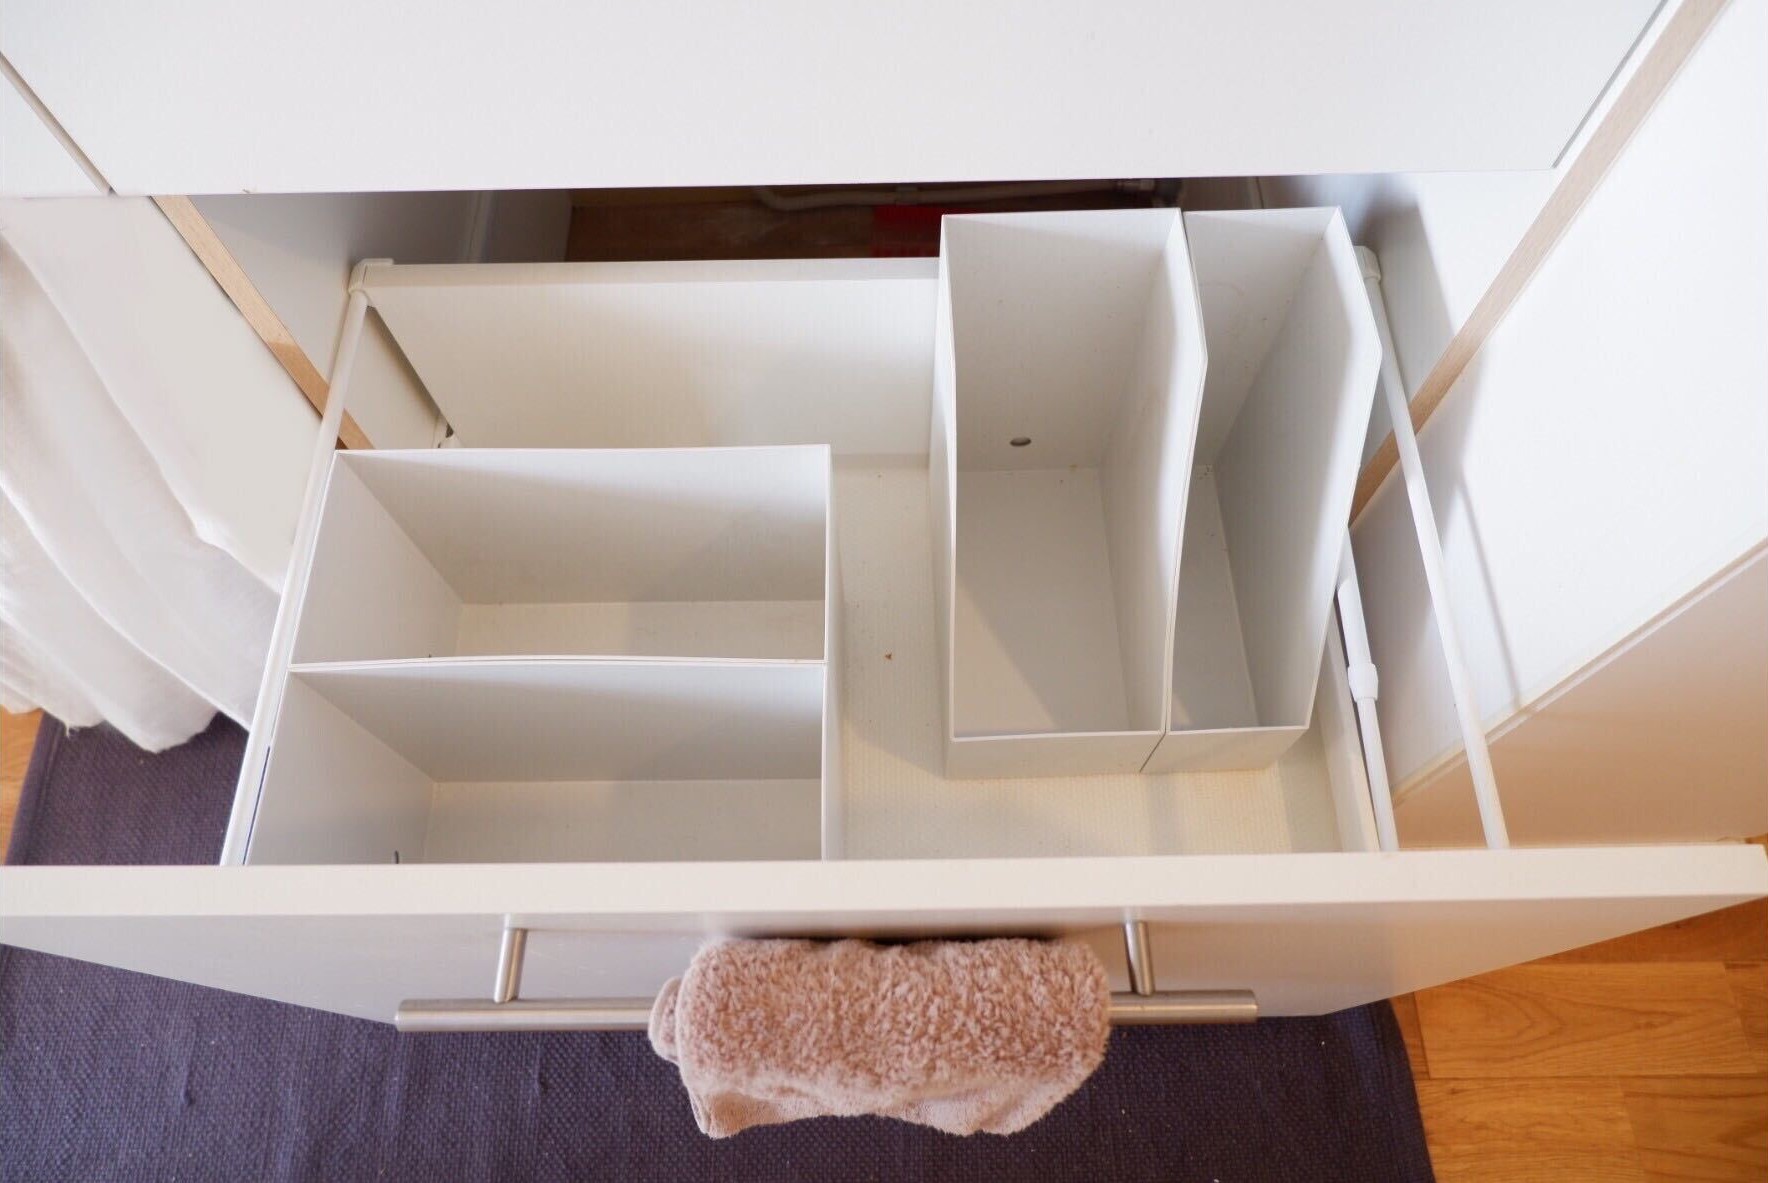 キッチン小物を収納するなら、無印良品のファイルボックスが便利です | goodroom journal